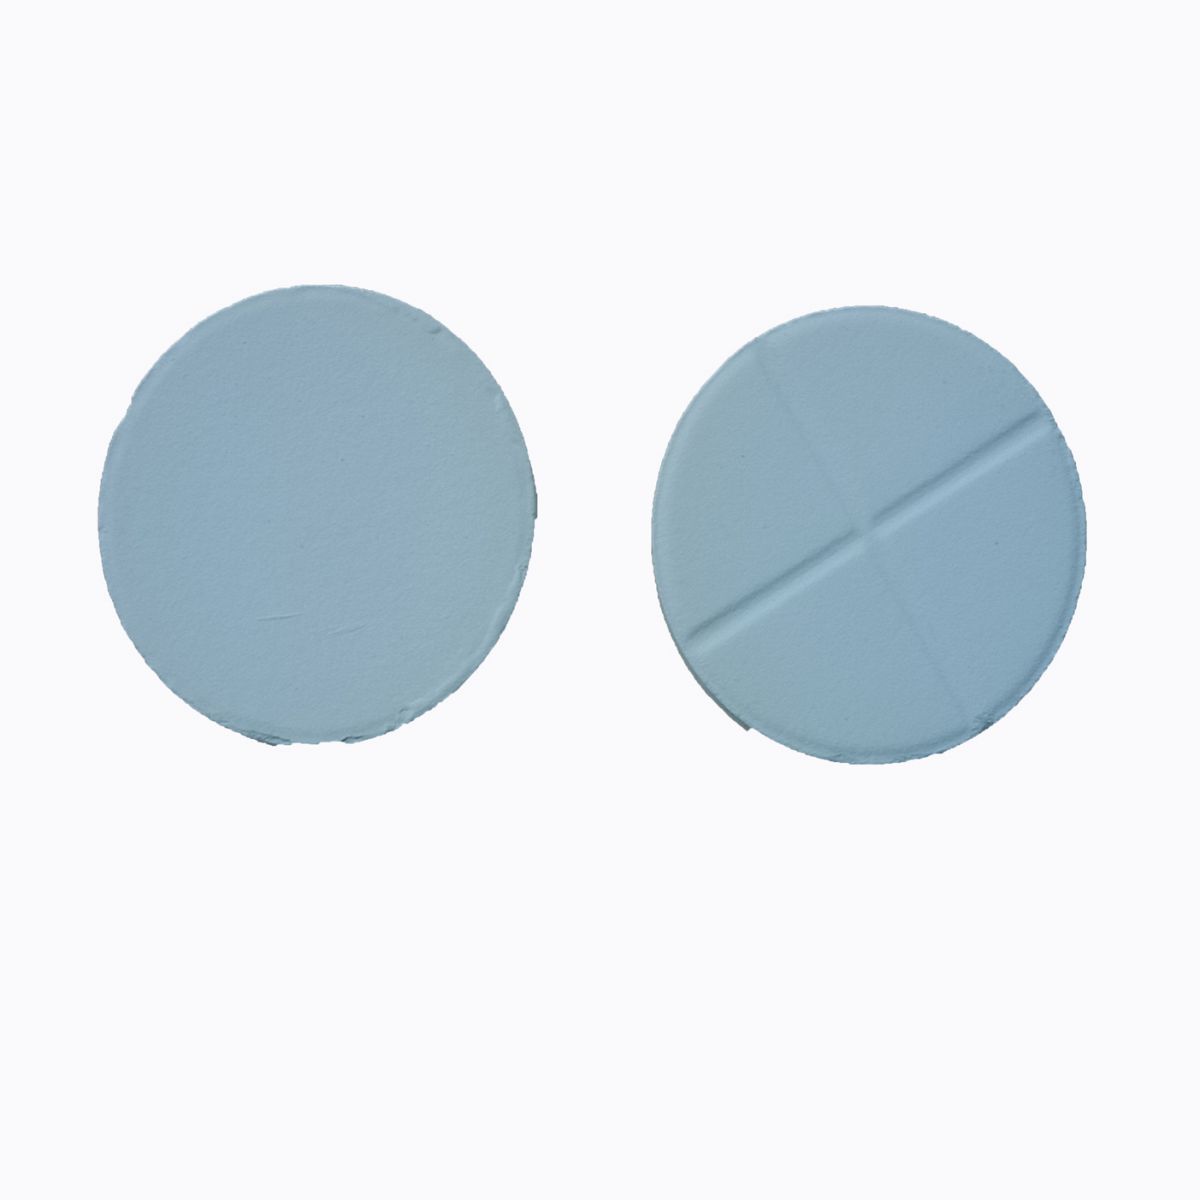 Gibberellic acid Tablet